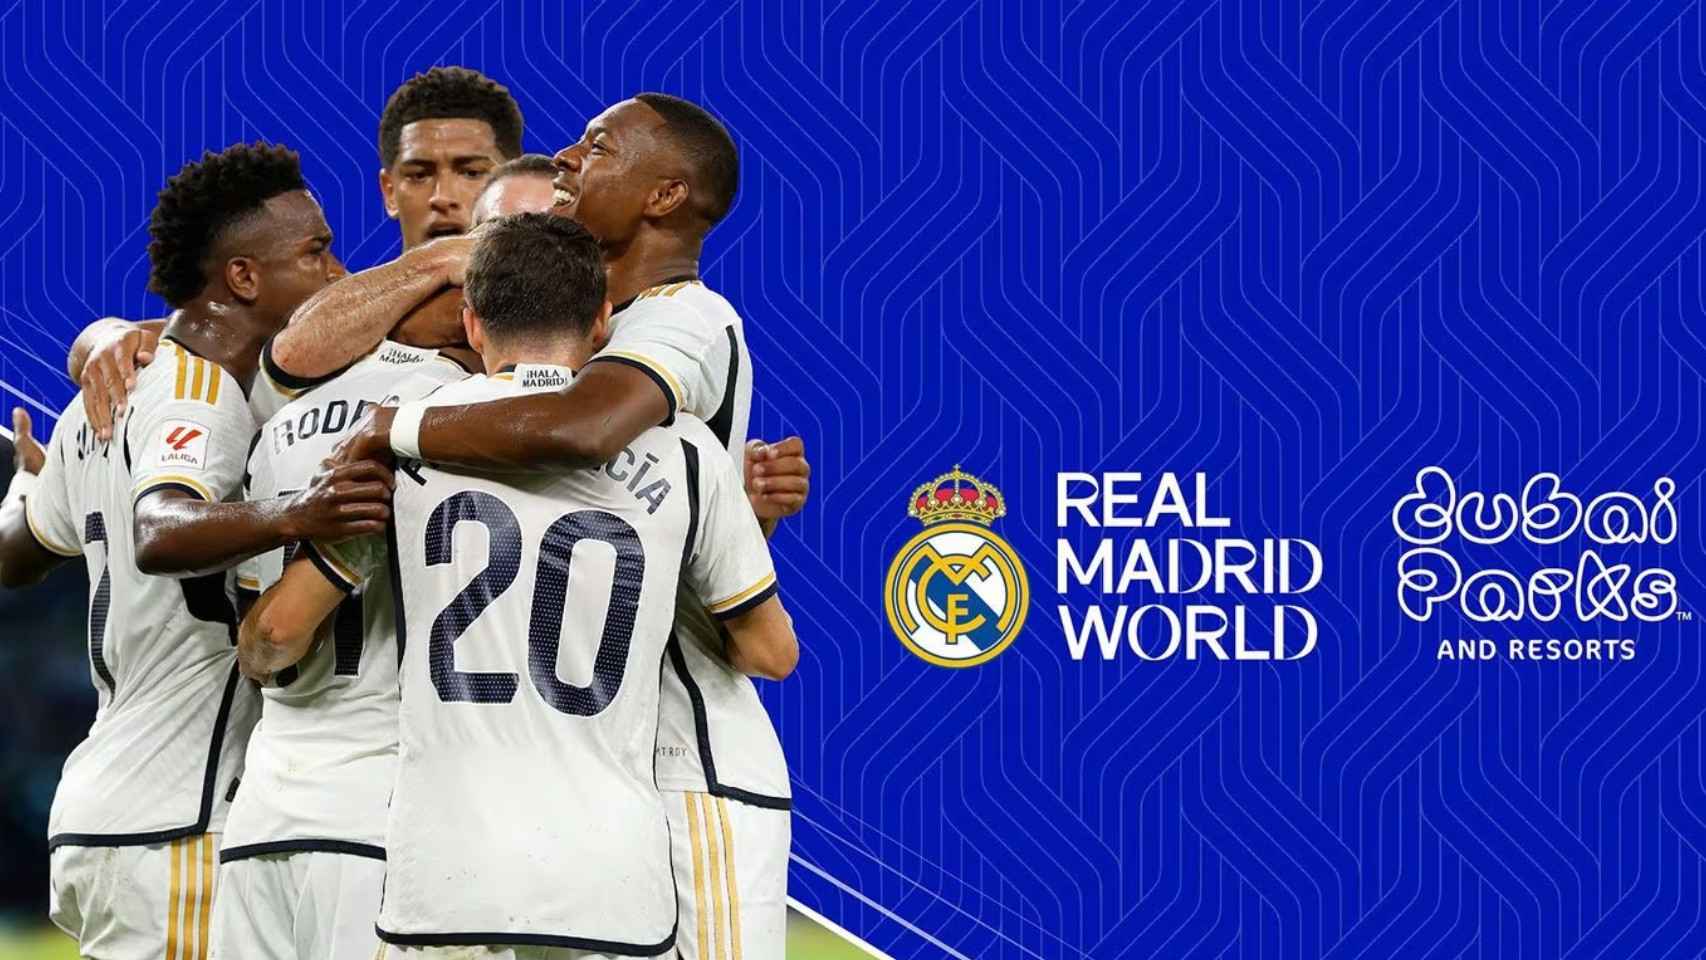 La imagen promocional de Real Madrid World, el parque temático del club merengue en Dubai